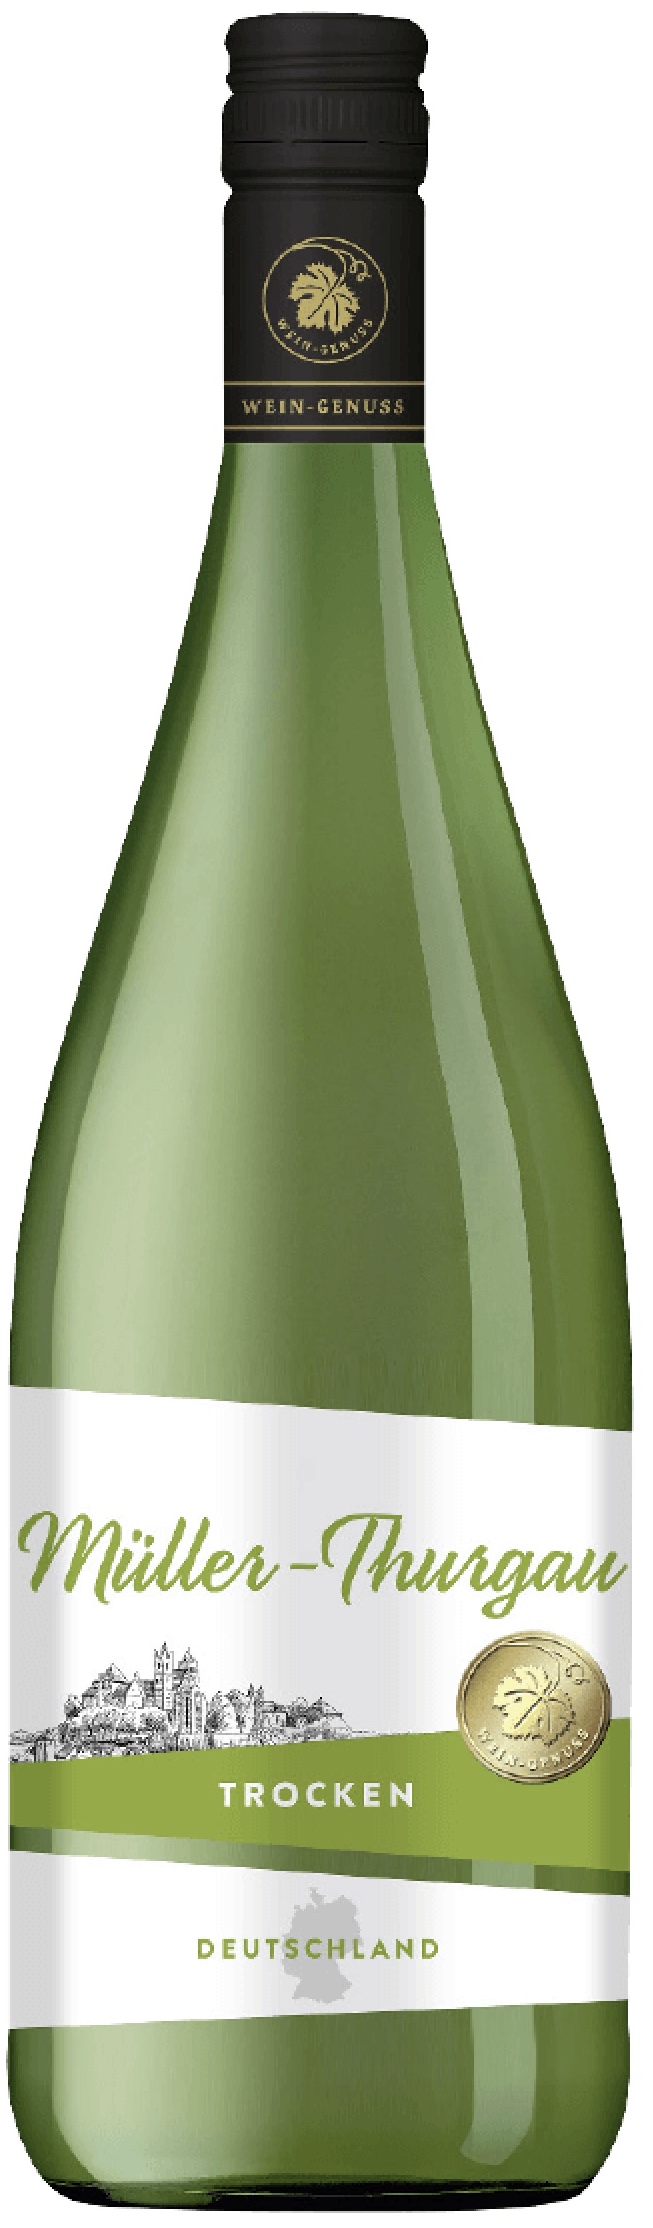 1,0L vol. Müller-Thurgau trocken Rheinhessen 11,5% Wein-Genuss